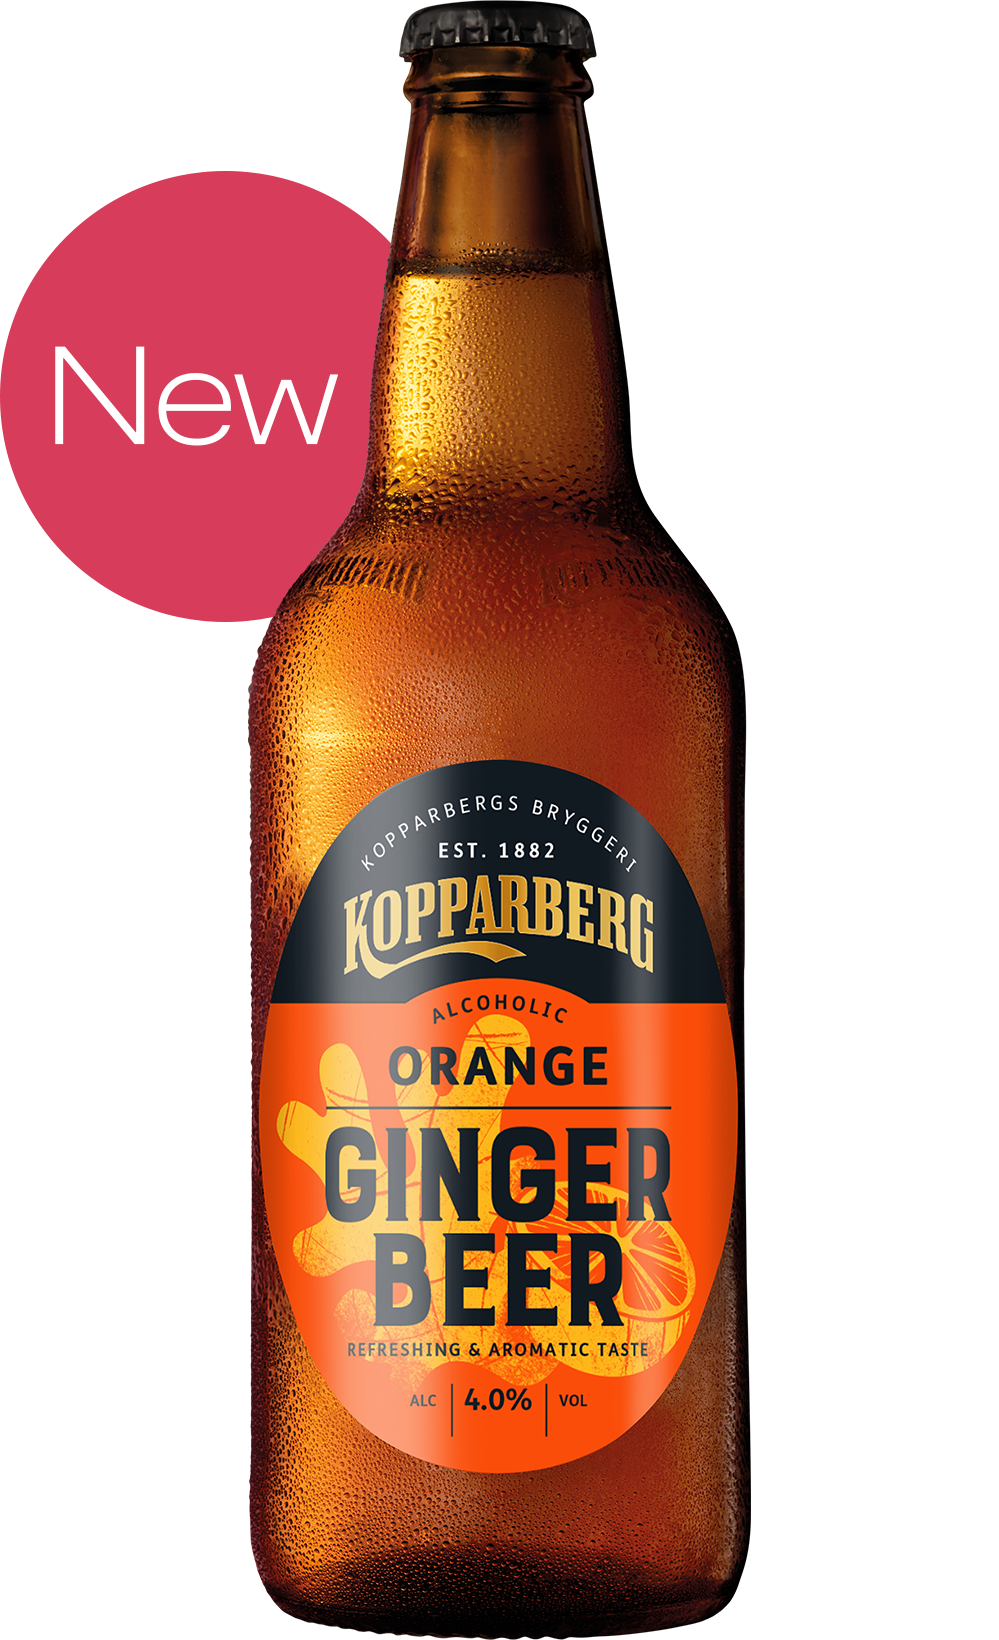 Orange Ginger Beer